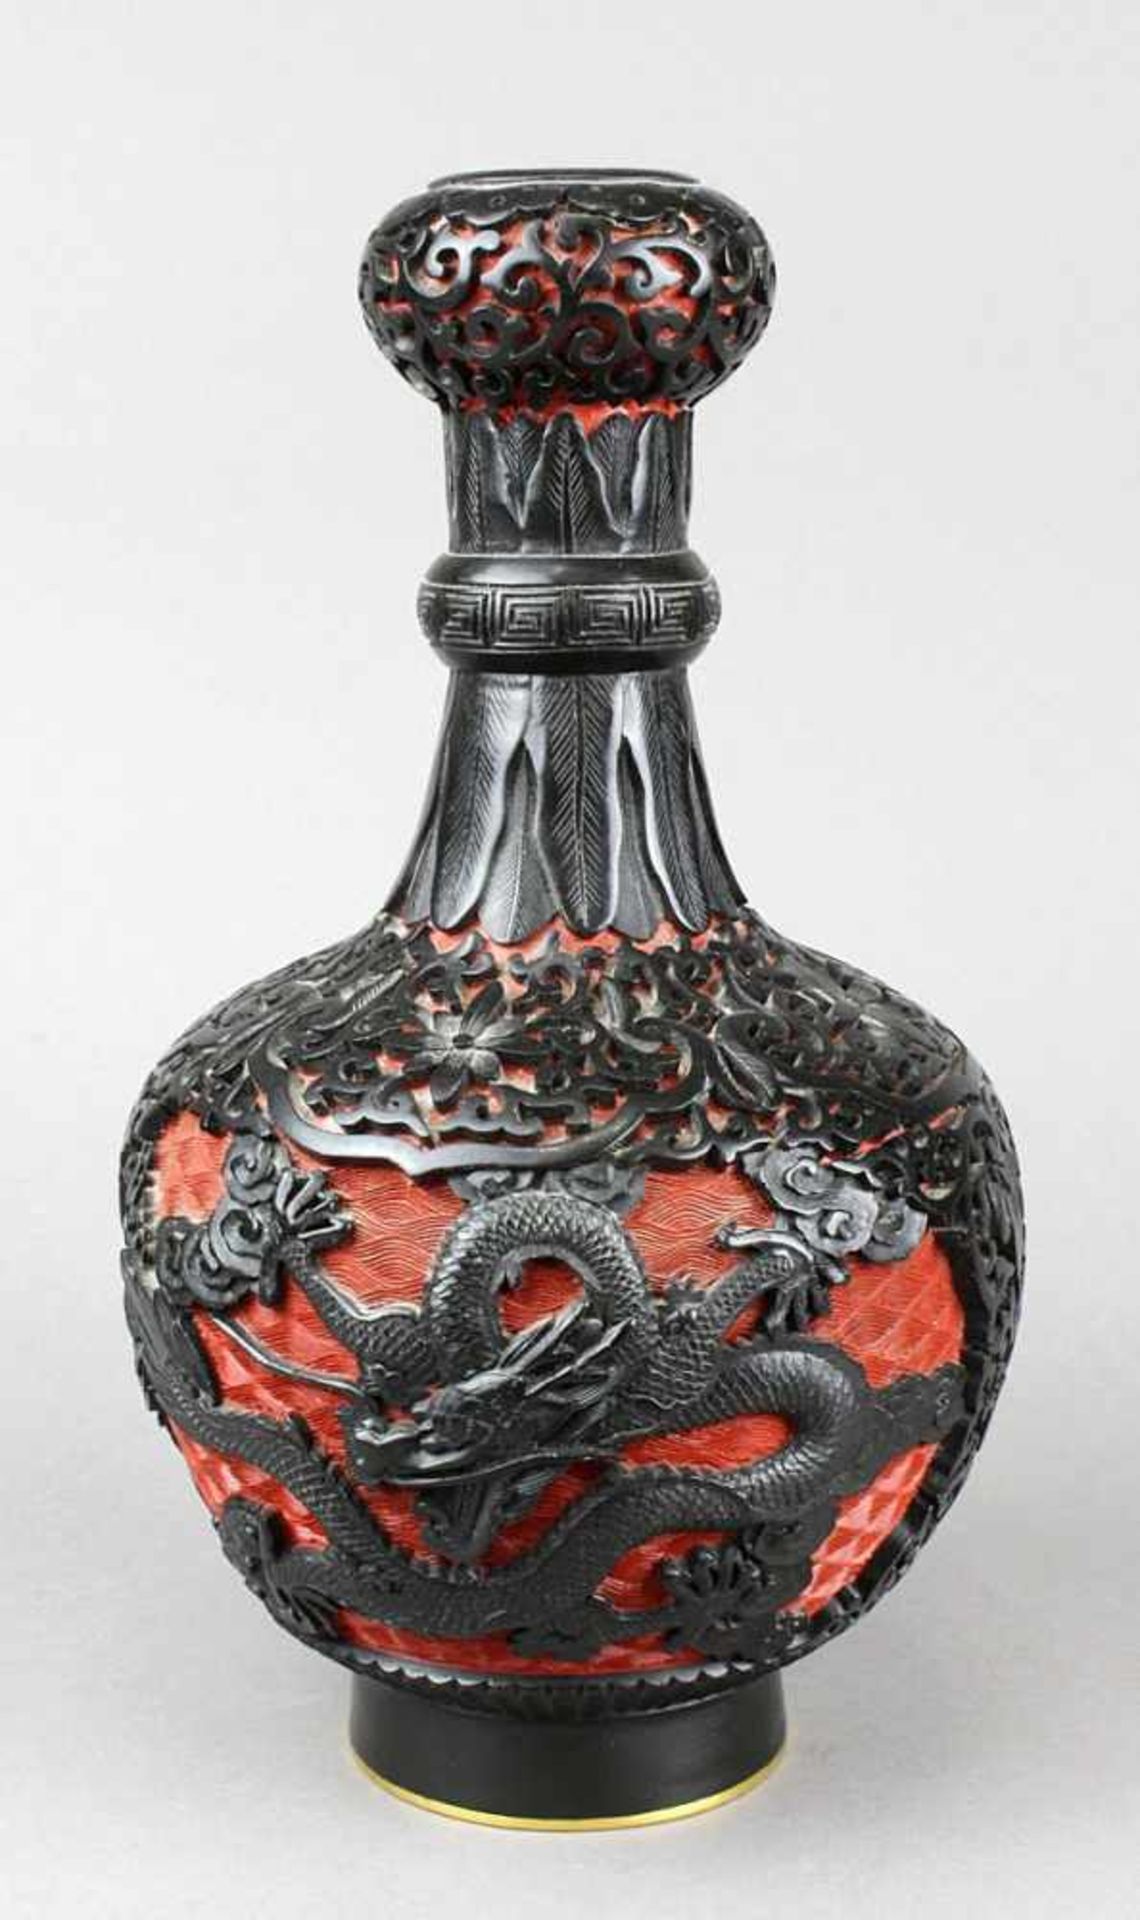 Chinesische Lackvase um 1900, Kupferkorpus mit rot-schwarzem Lack, fein geschnitzt mit Ornamenten